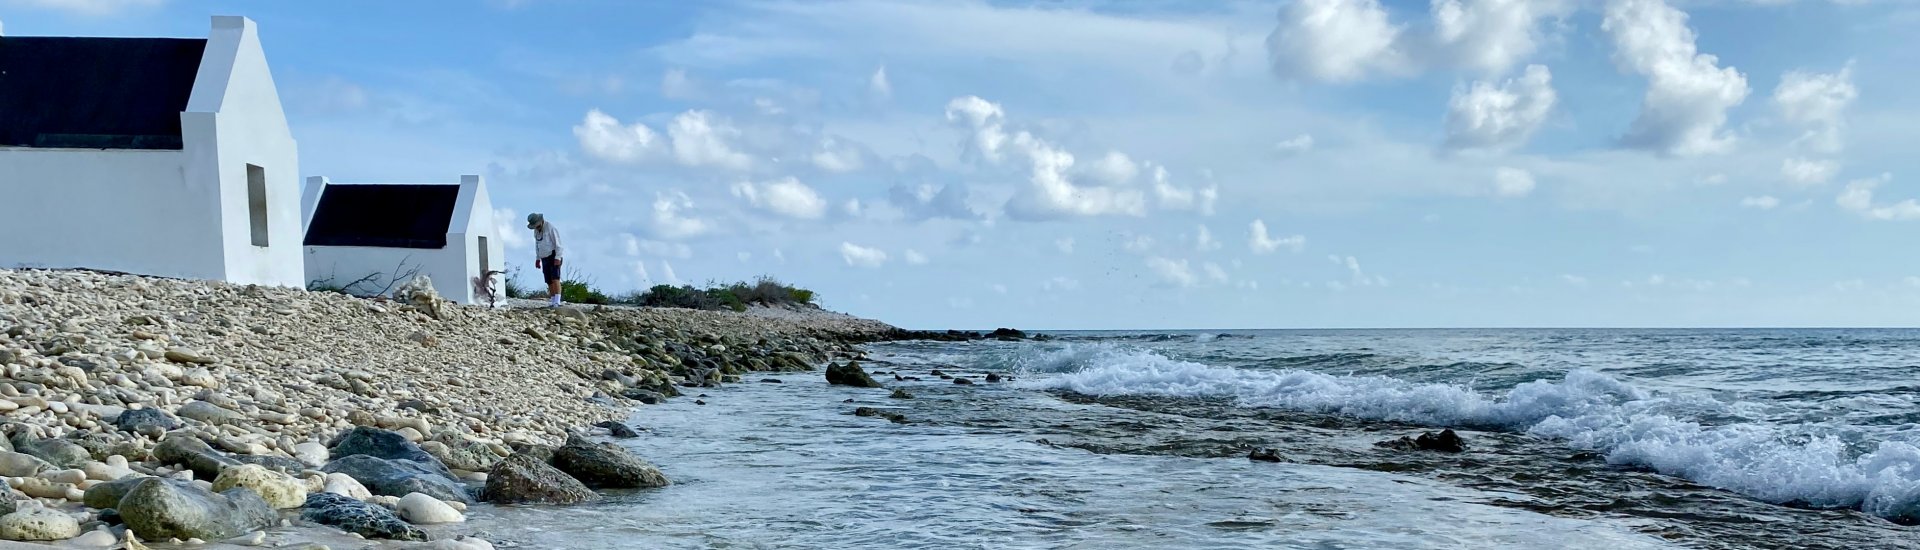 Het strand van Bonaire bestaat hier uit stukjes koraal. Ook zijn kleine slavenhuisjes te zien. 